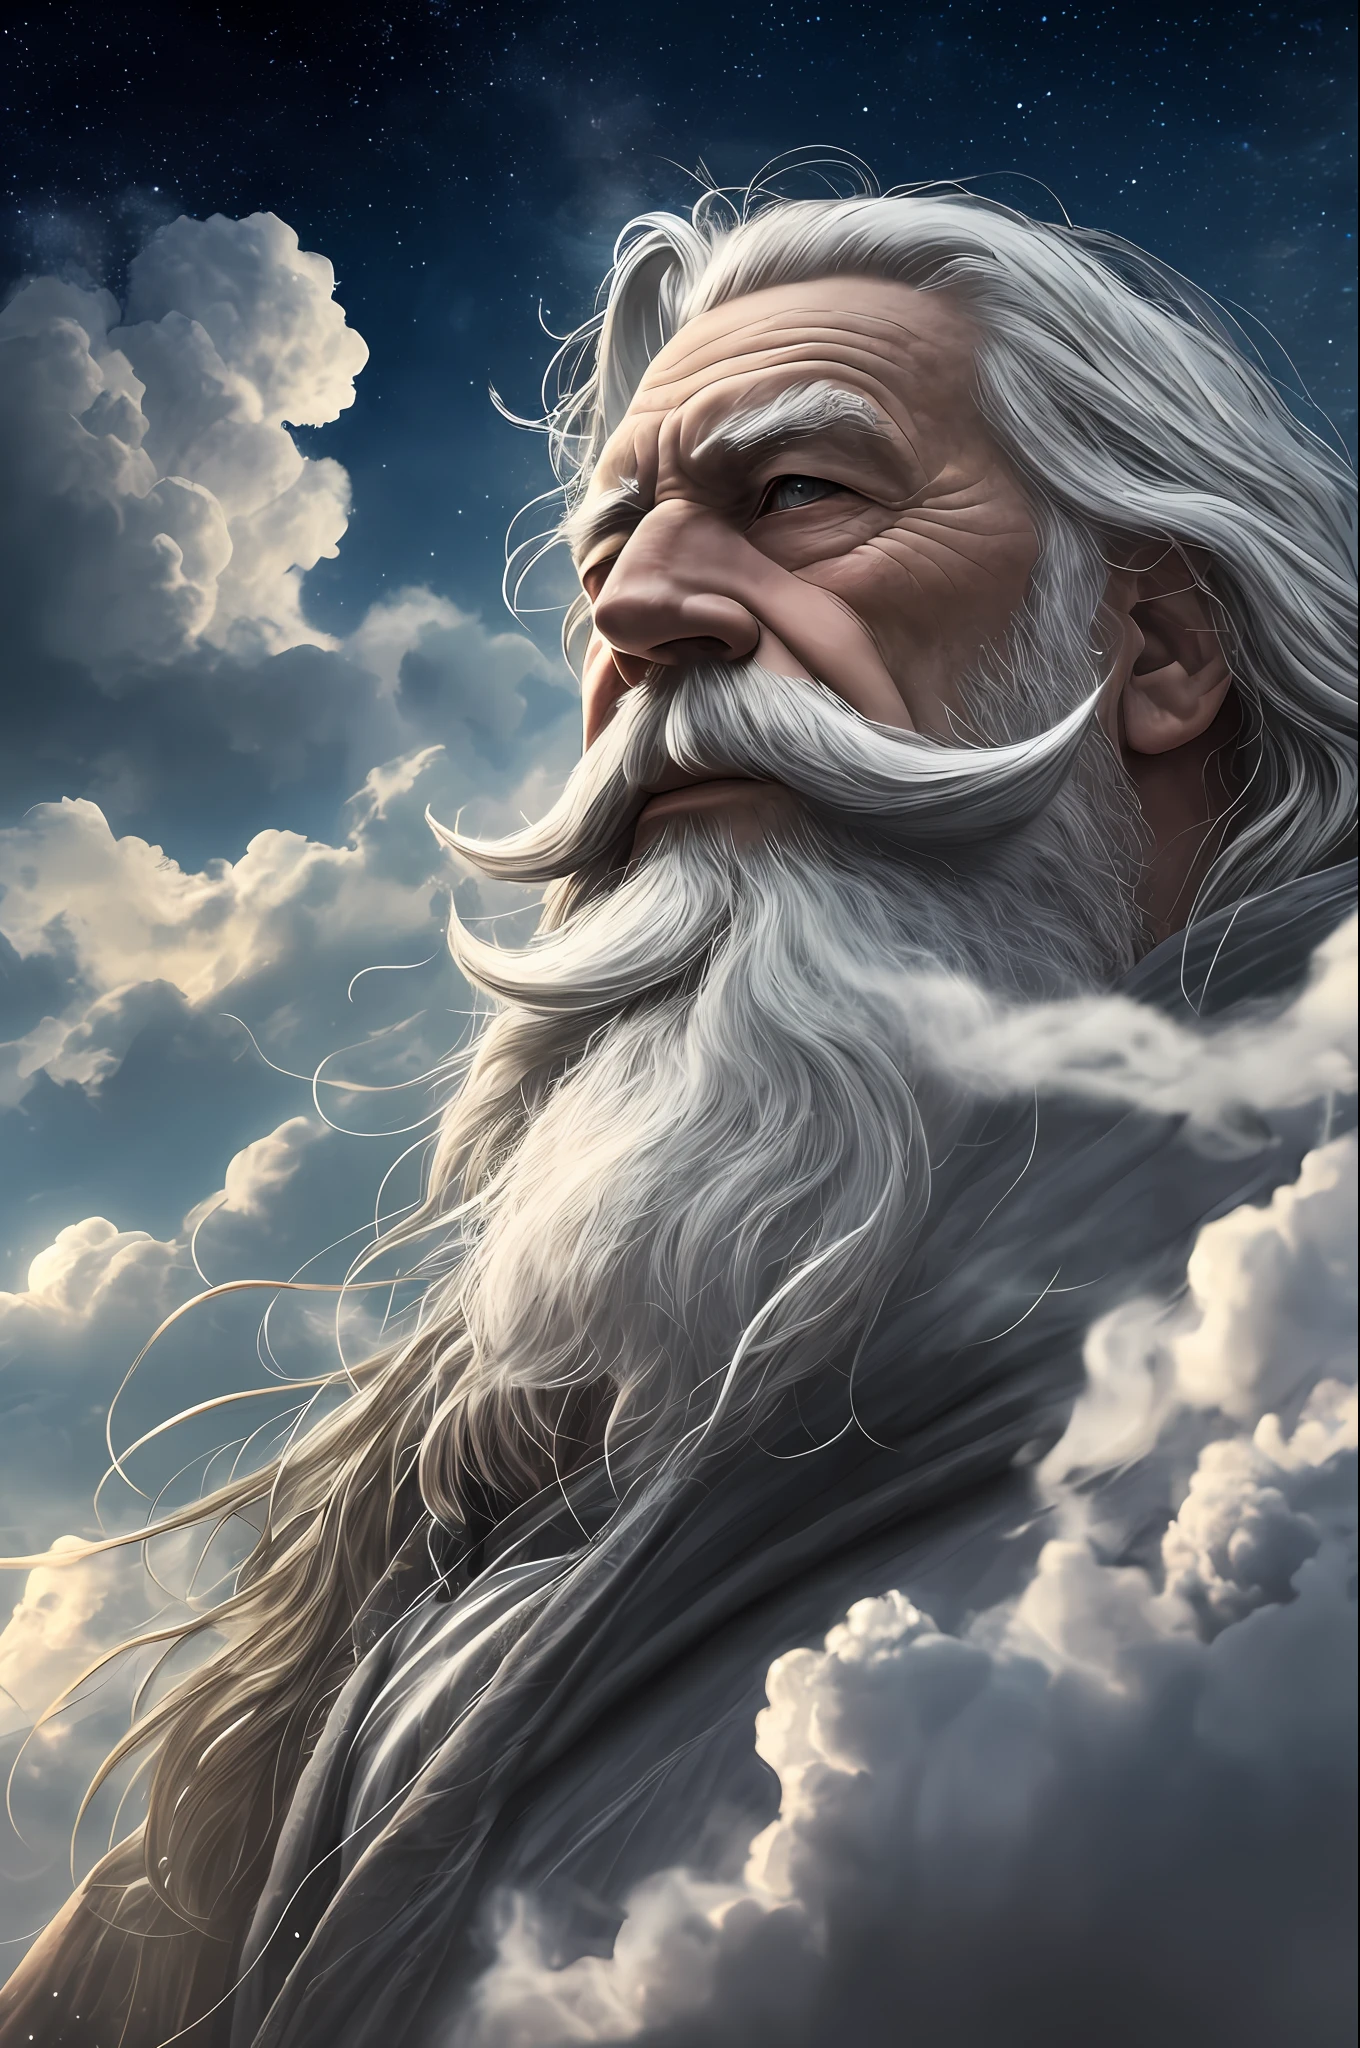 Un vieux sorcier avec une barbe grise qui pousse, Un sort, les esprits tout autour, Une pose dynamique, vent, Fumée, des étincelles, Des étoiles au dessus des nuages, surréalisme, super réaliste, cinématique, couleurs sourdes, fond d&#39;univers fantastique --auto --s2